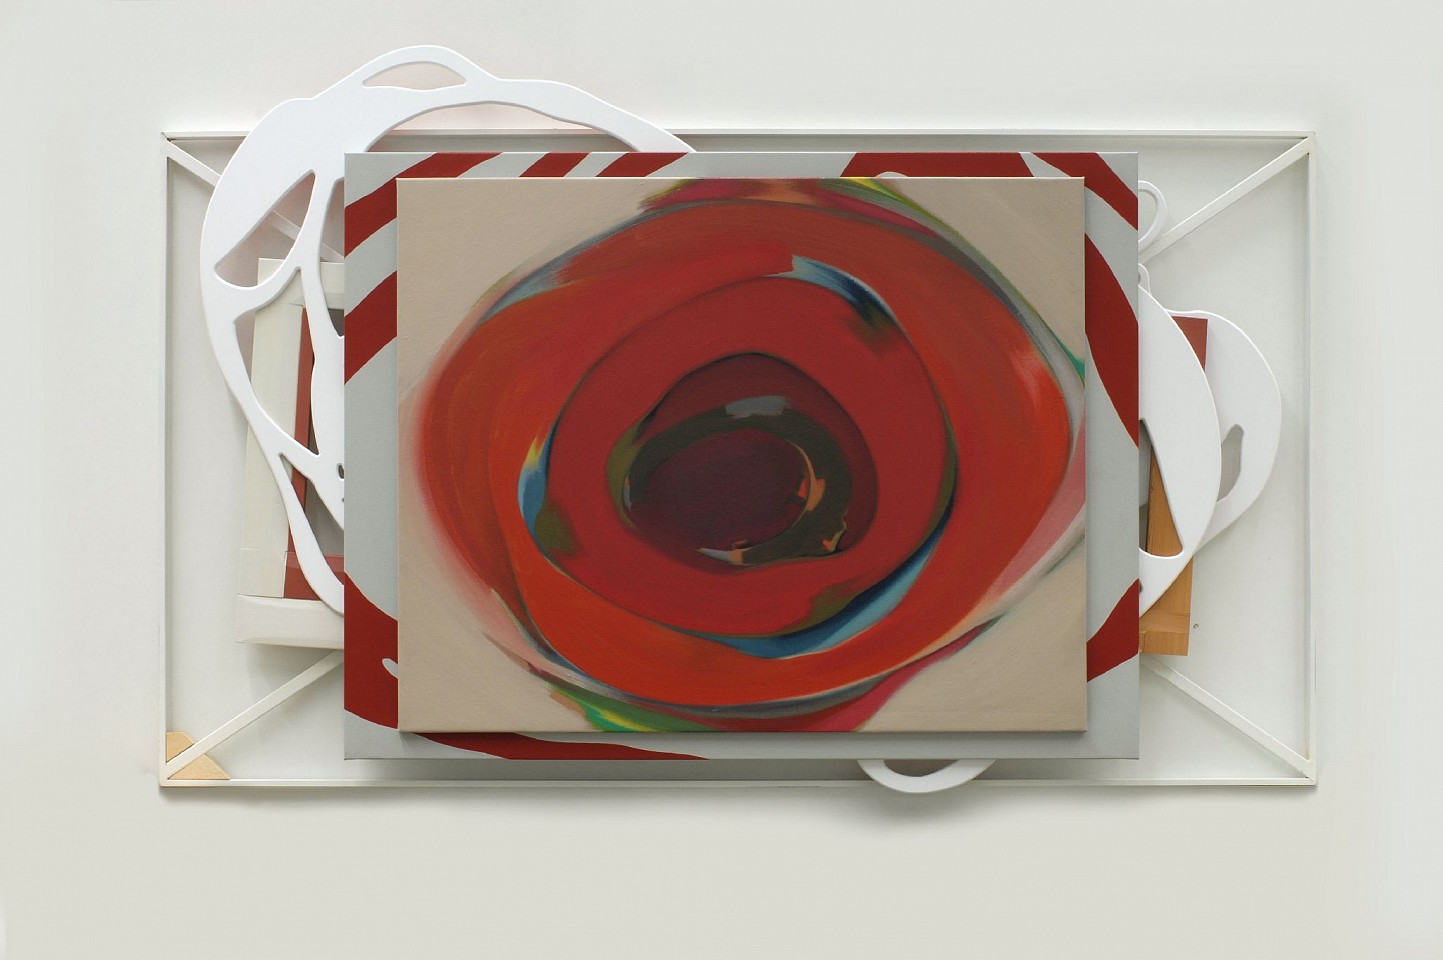 DANIEL VERBIS, Autorretrato en el fondo de tu ojo, 2012
acrylic on canvas, DM and wood, 44 1/8 x 67 3/4 x 4 3/4 in. (112 x 172 x 12 cm)
VD-C-0033